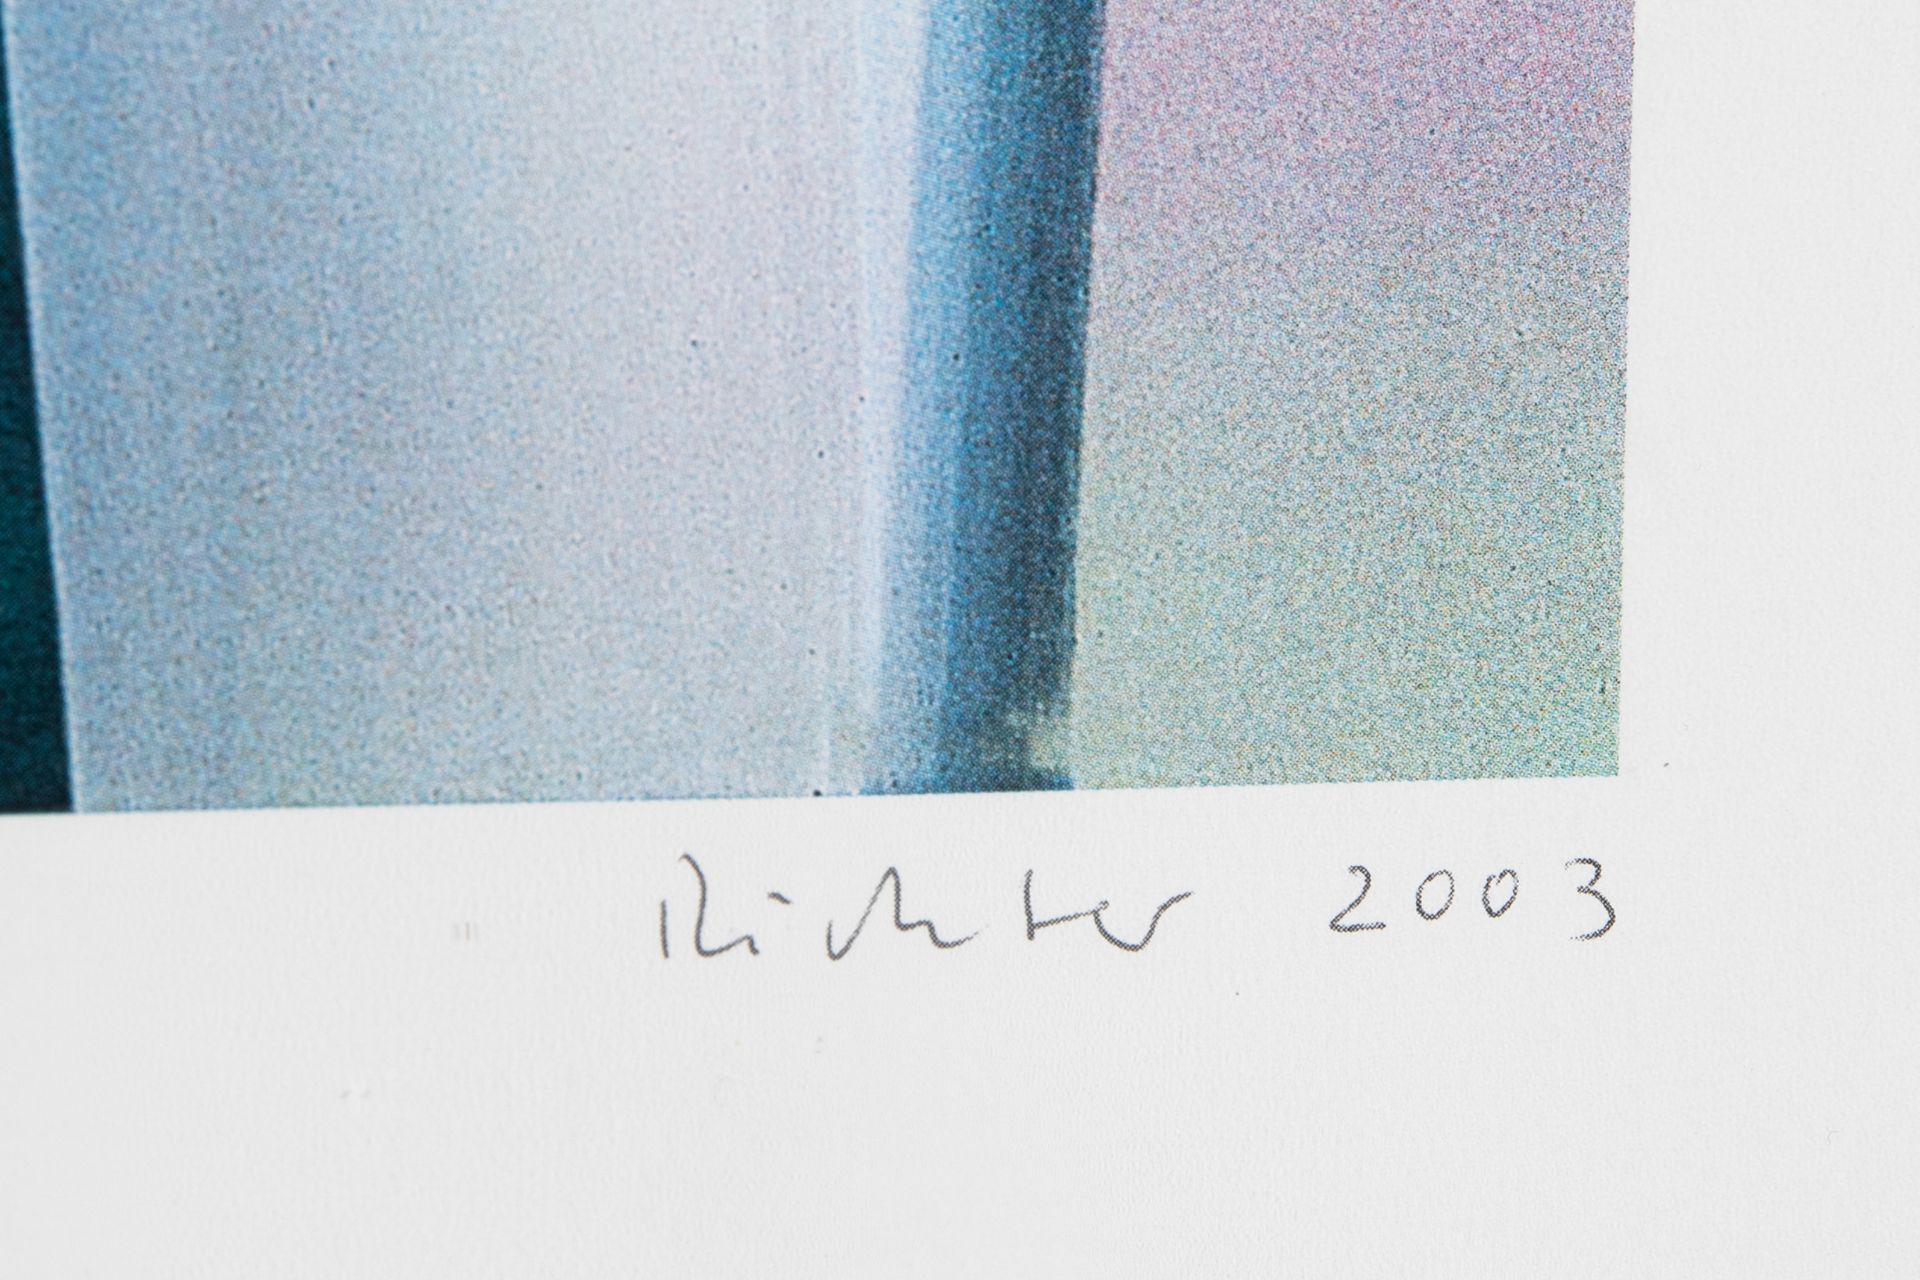 Lot 313 Gerhard Richter*, Victoria I, 2003 - Bild 4 aus 6